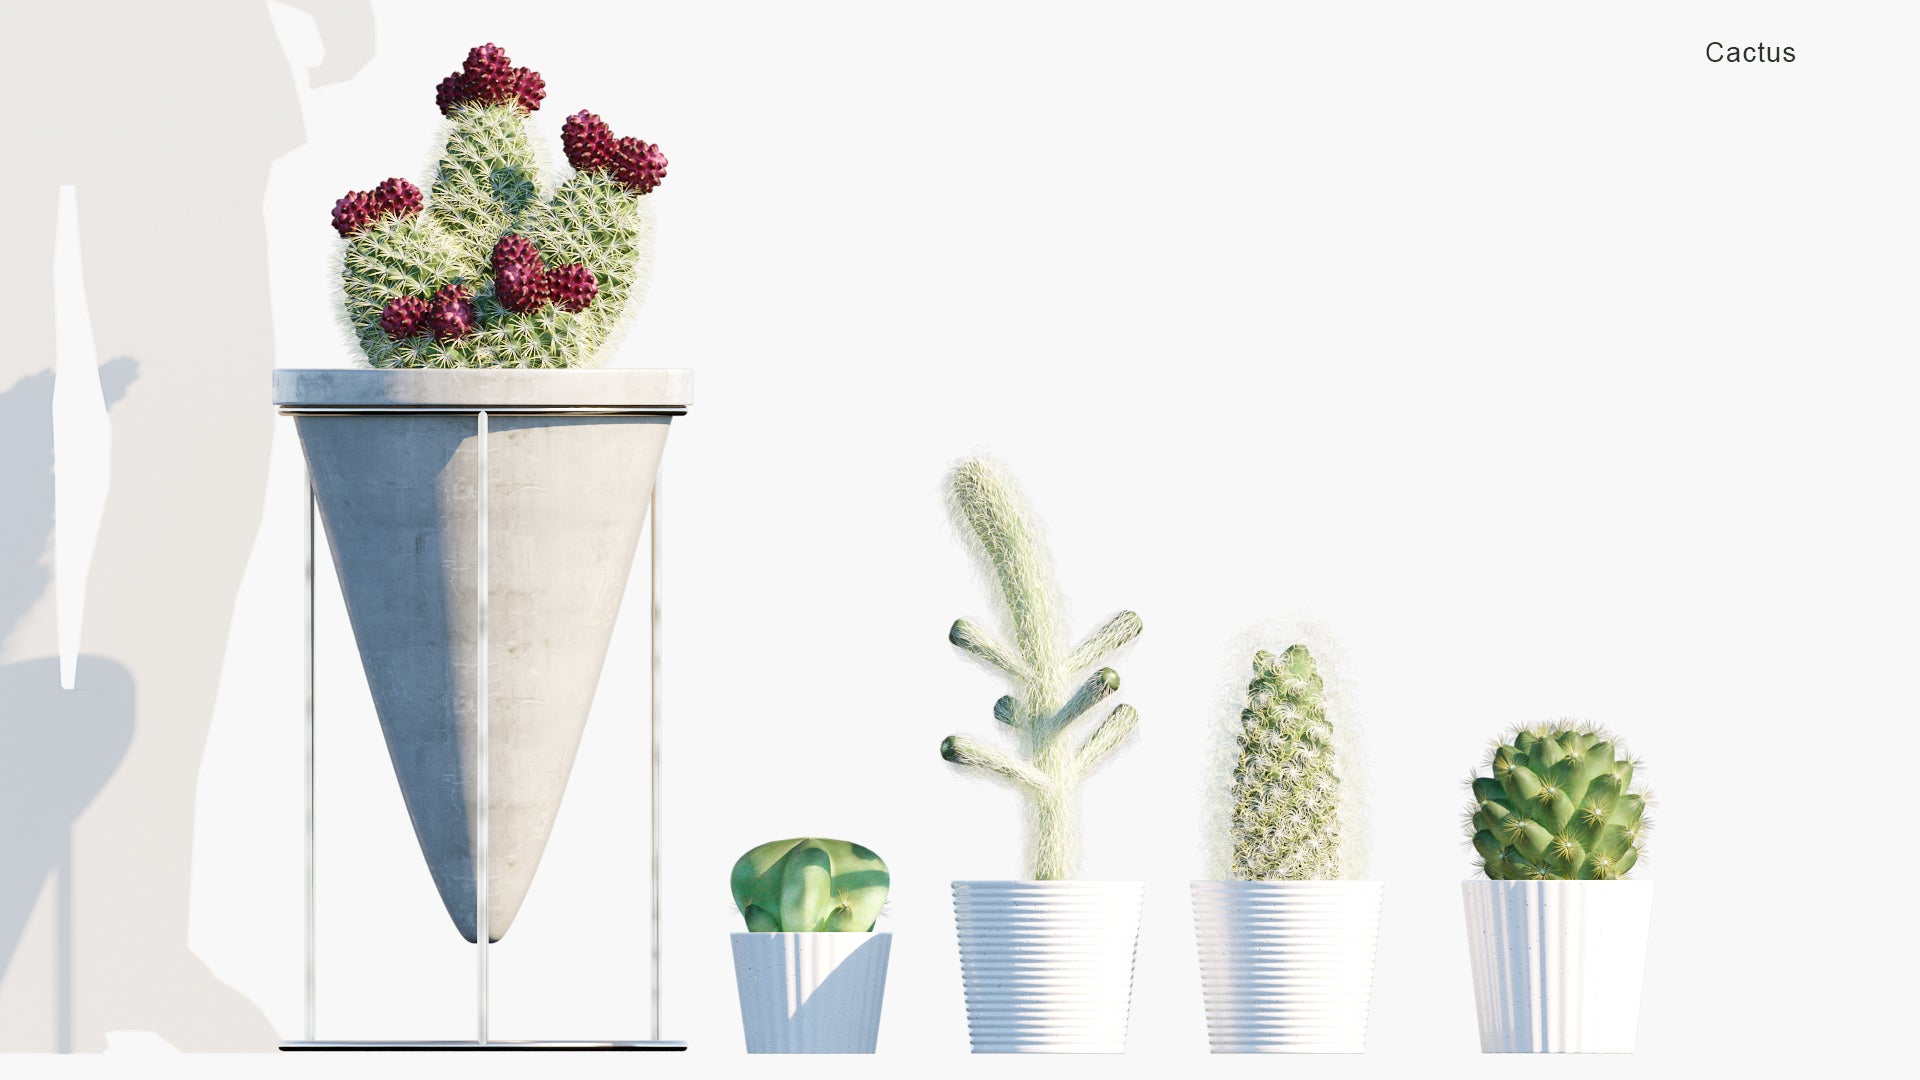 Cactus - Cacti (3D Model)